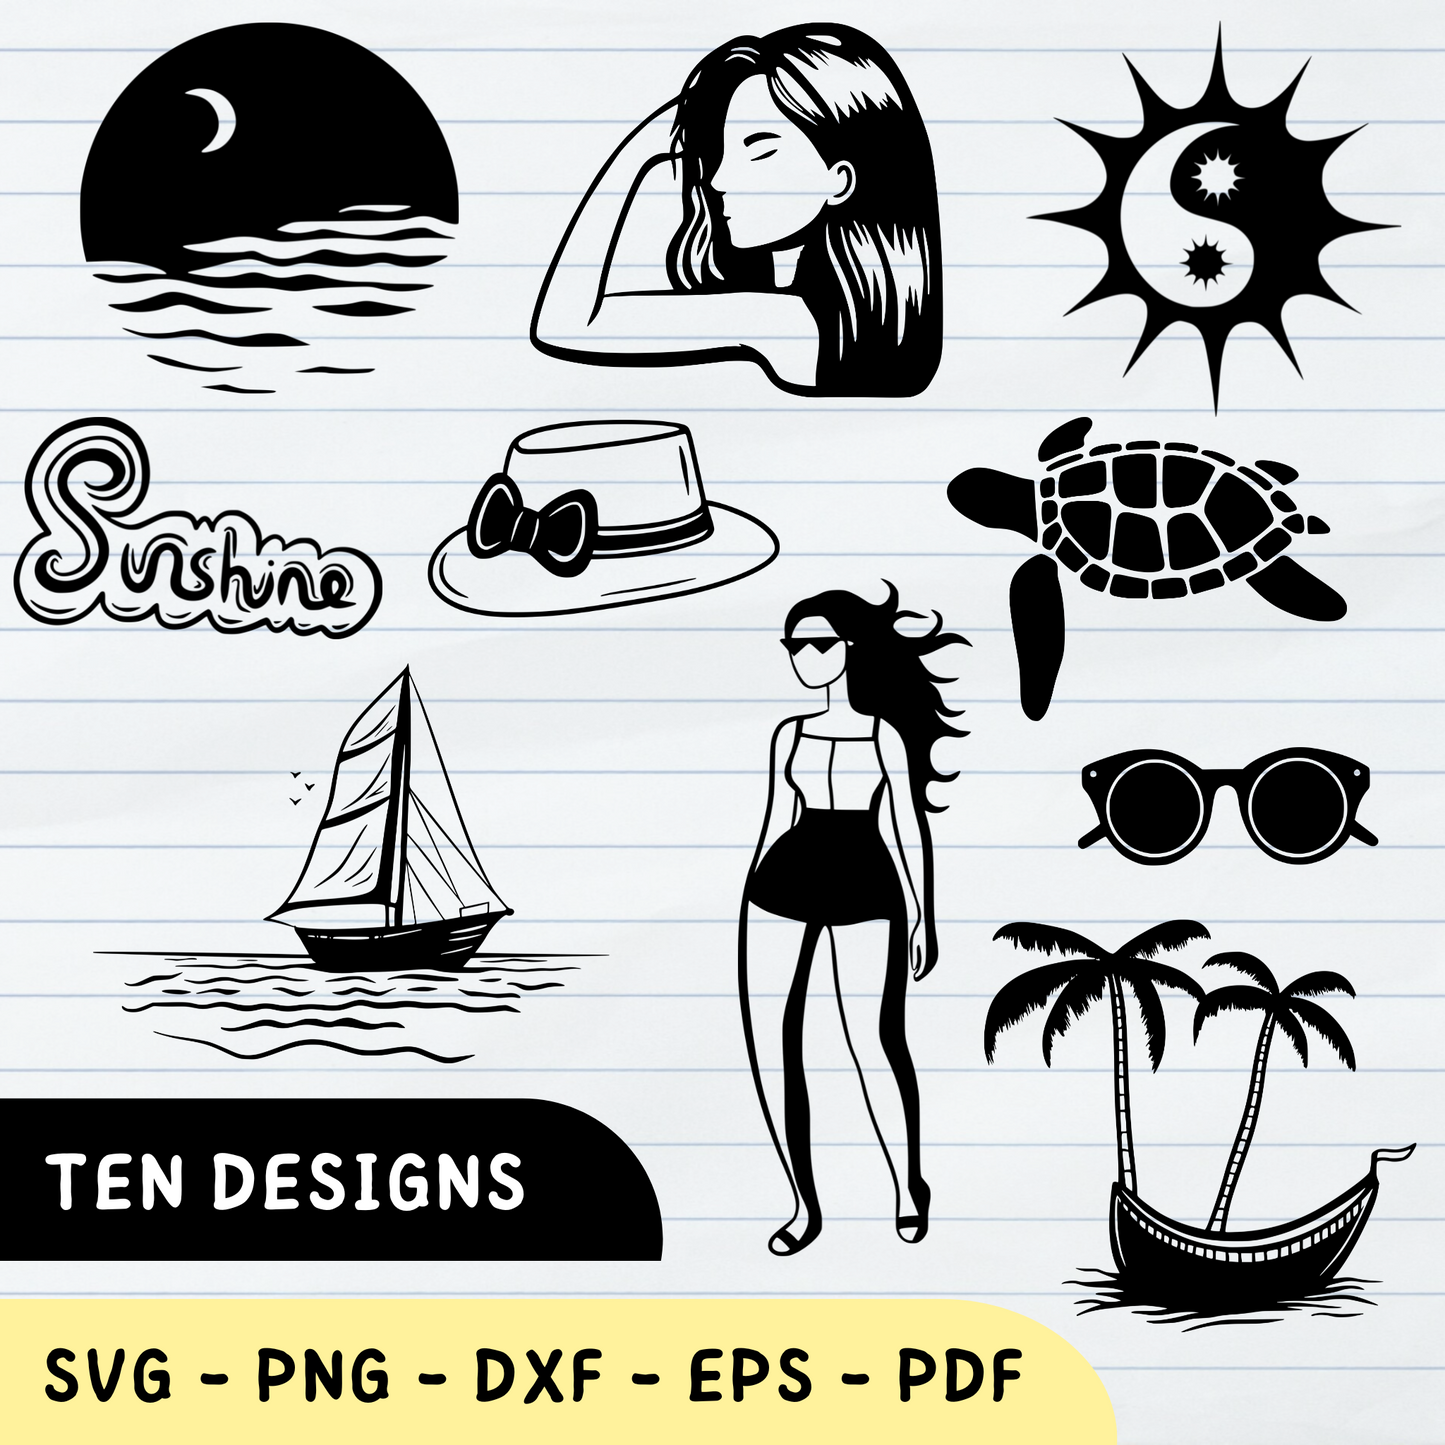 Paquete de verano, paquete de verano SVG, diseños de verano PNG, paquete de vectores de verano 2: 10 diseños